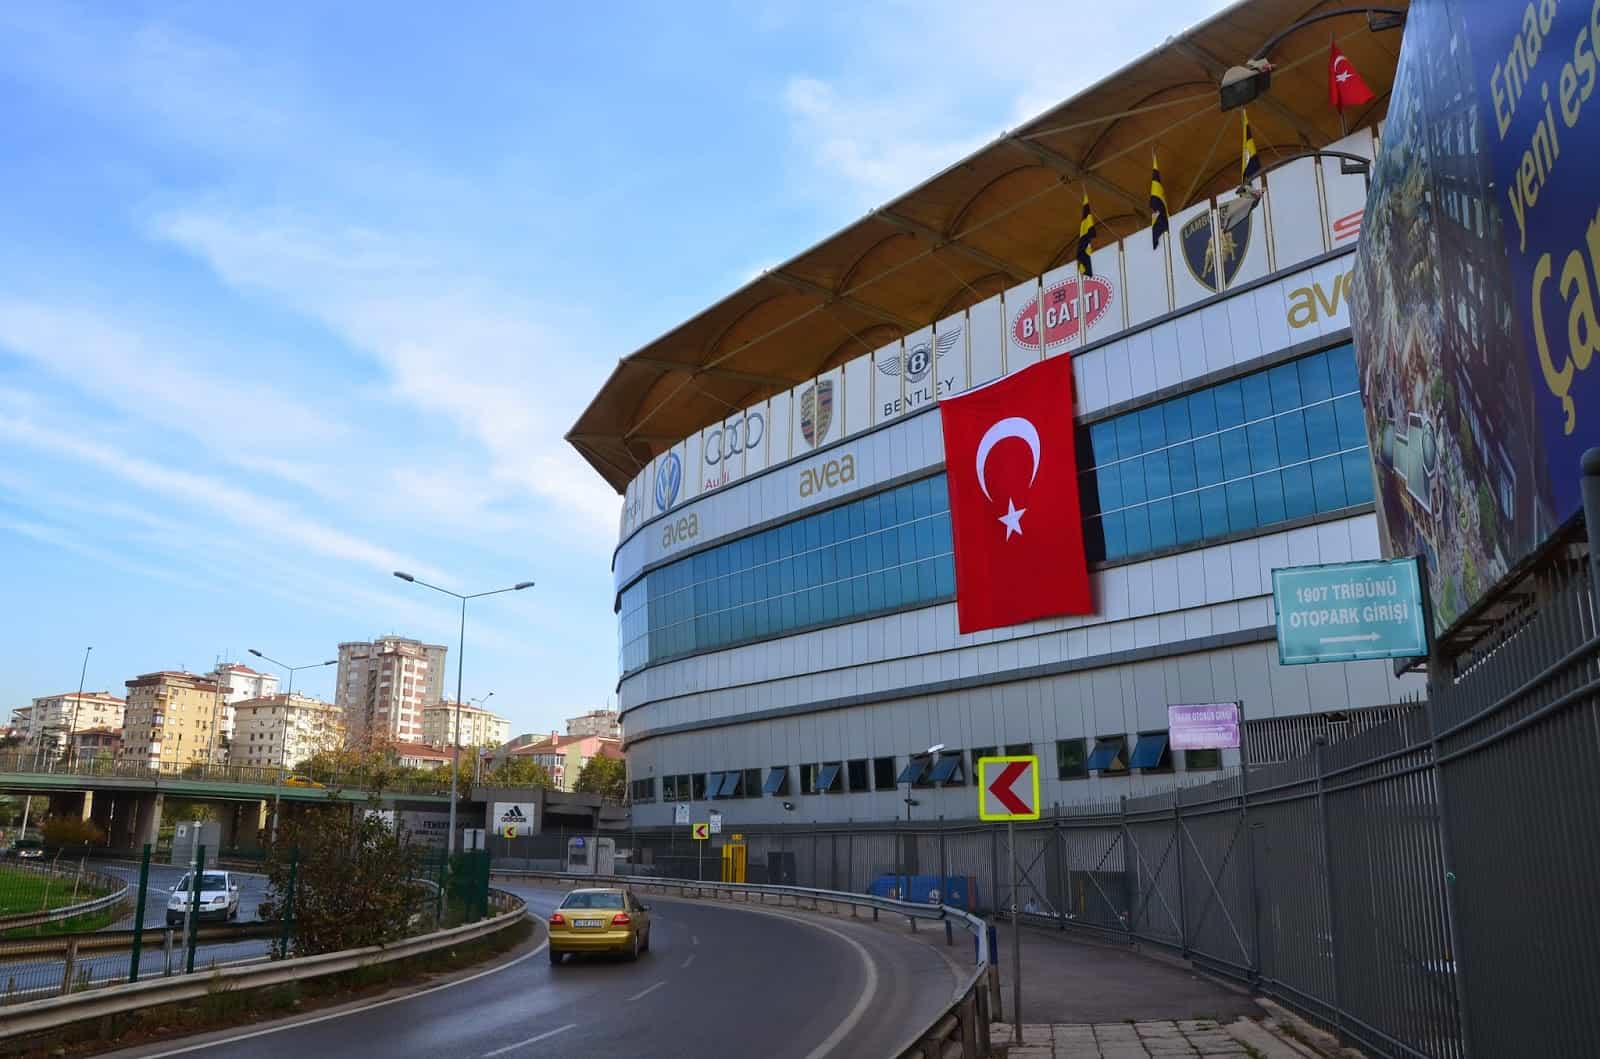 Şükrü Saracoğlu Stadium in Kadıköy, Istanbul, Turkey